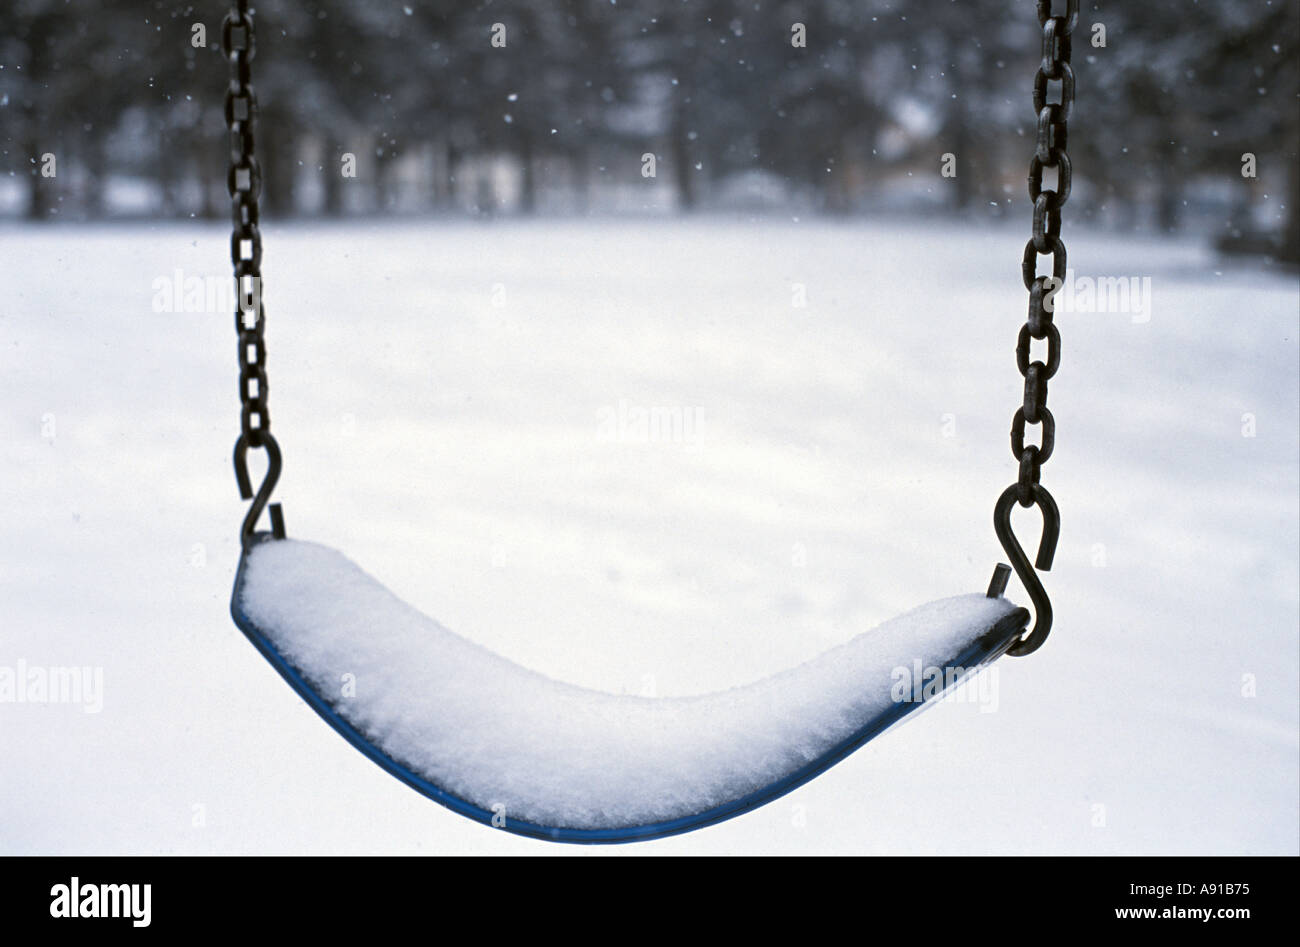 Empty swing in winter Stock Photo